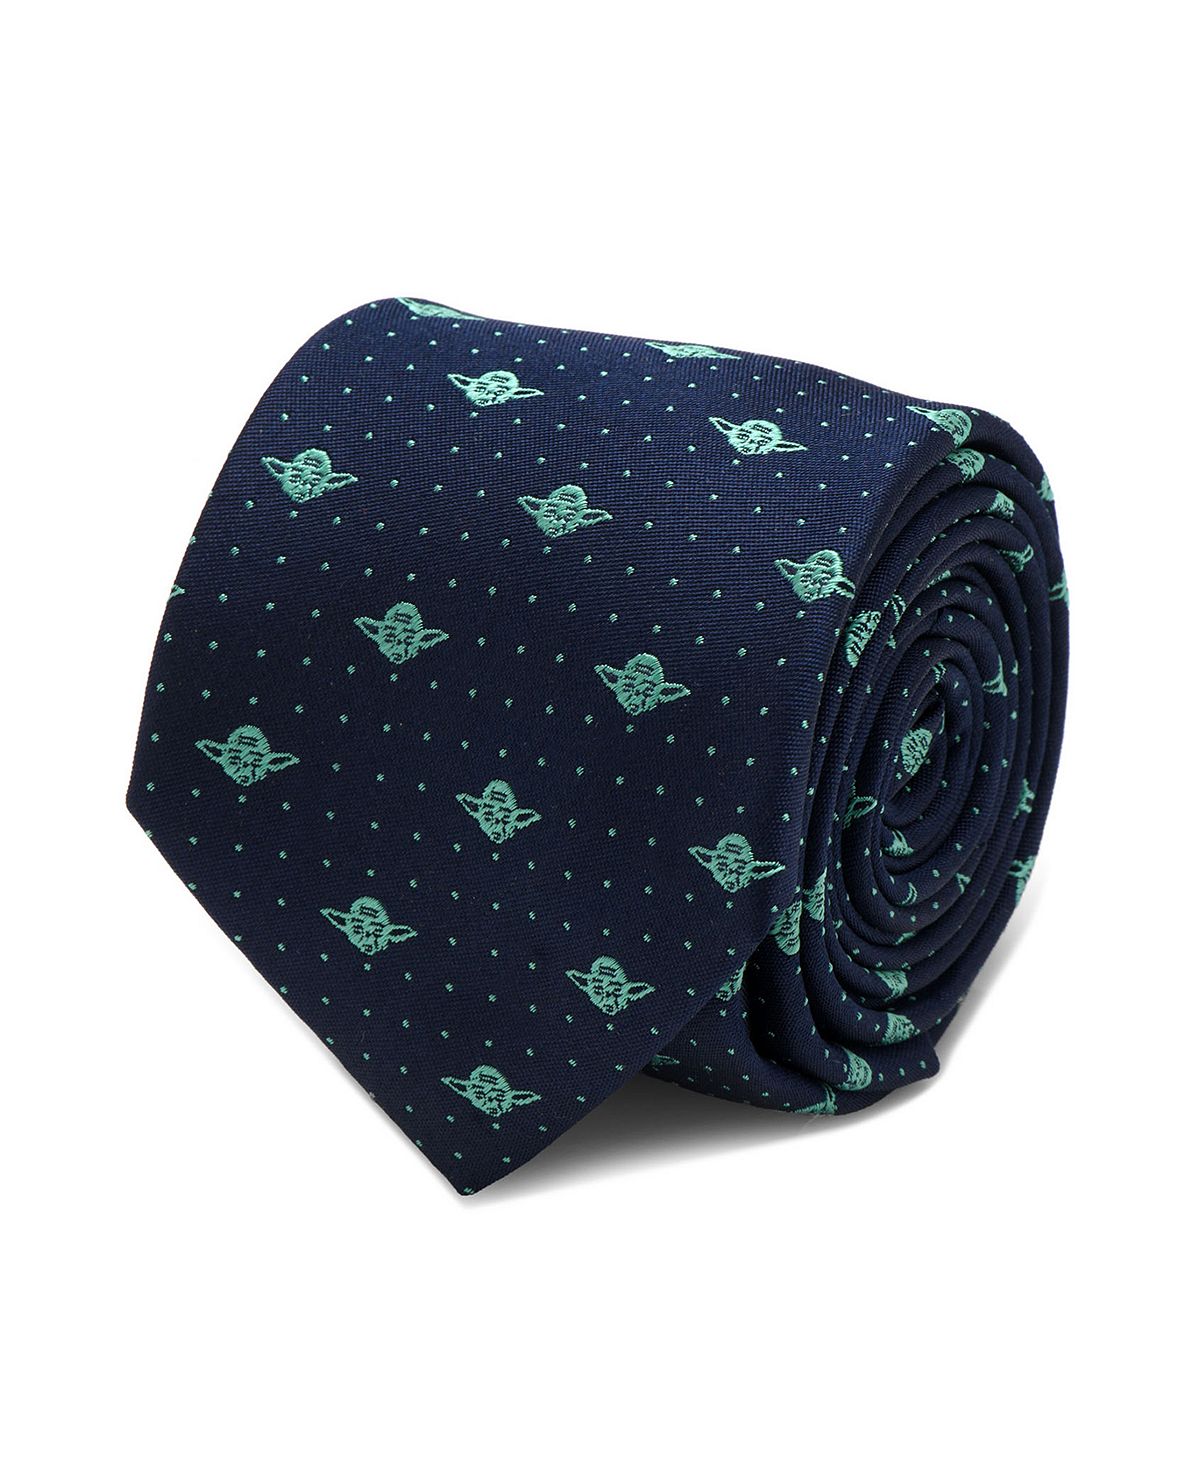 Мужской галстук Yoda Dot Star Wars мужской галстук из полиэстера 8 см галстук с принтом в виде научной фантастики и верблюдов мужской галстук в стиле харадзюку деловой повс